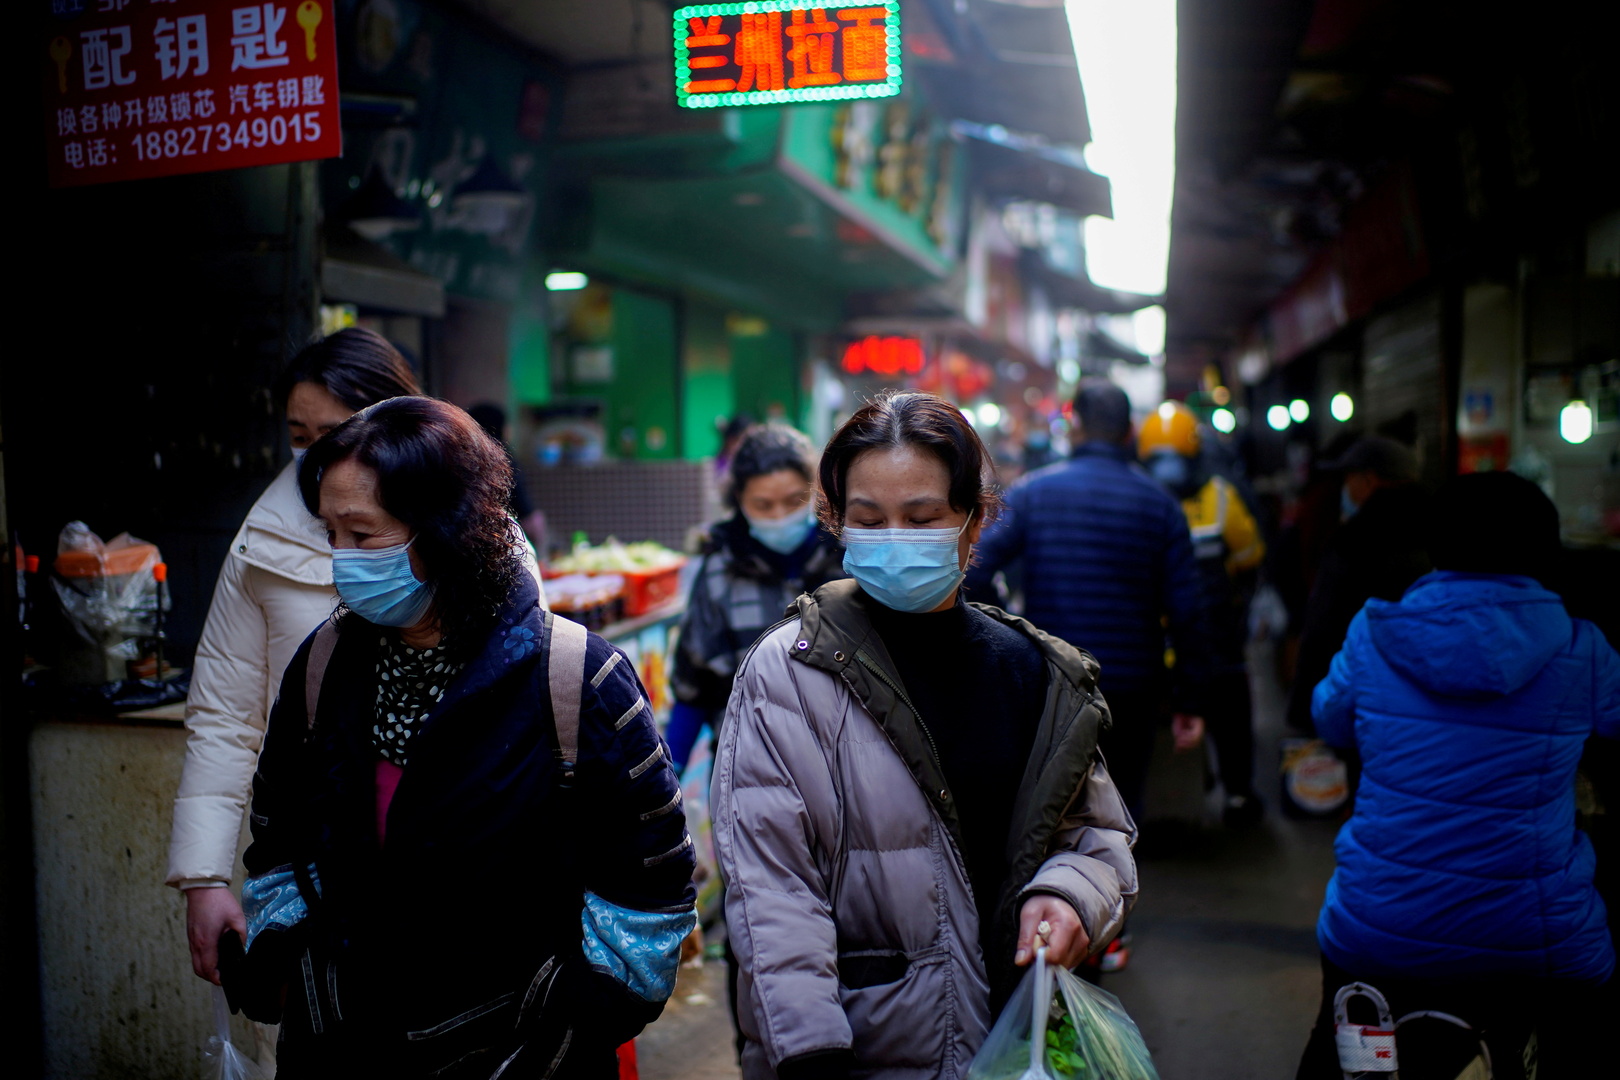 وسط عودة تفشي الوباء في العالم.. الصين بلد المليار ونصف تسجل إصابتين فقط بكورونا